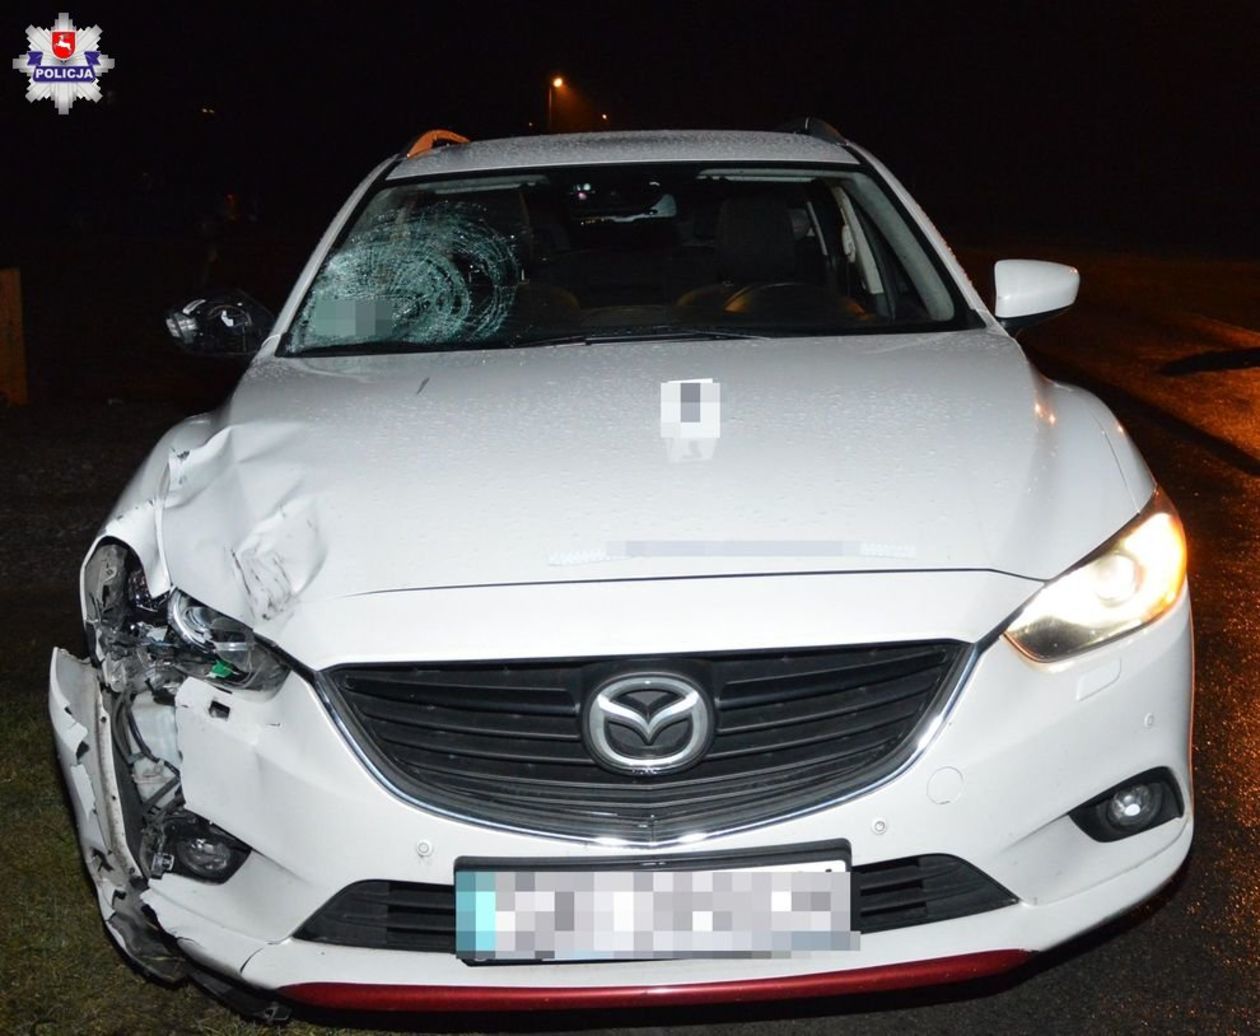  Wypadek w Różańcu: 15-latka śmiertelnie potrącona przez samochód  - Autor: Policja